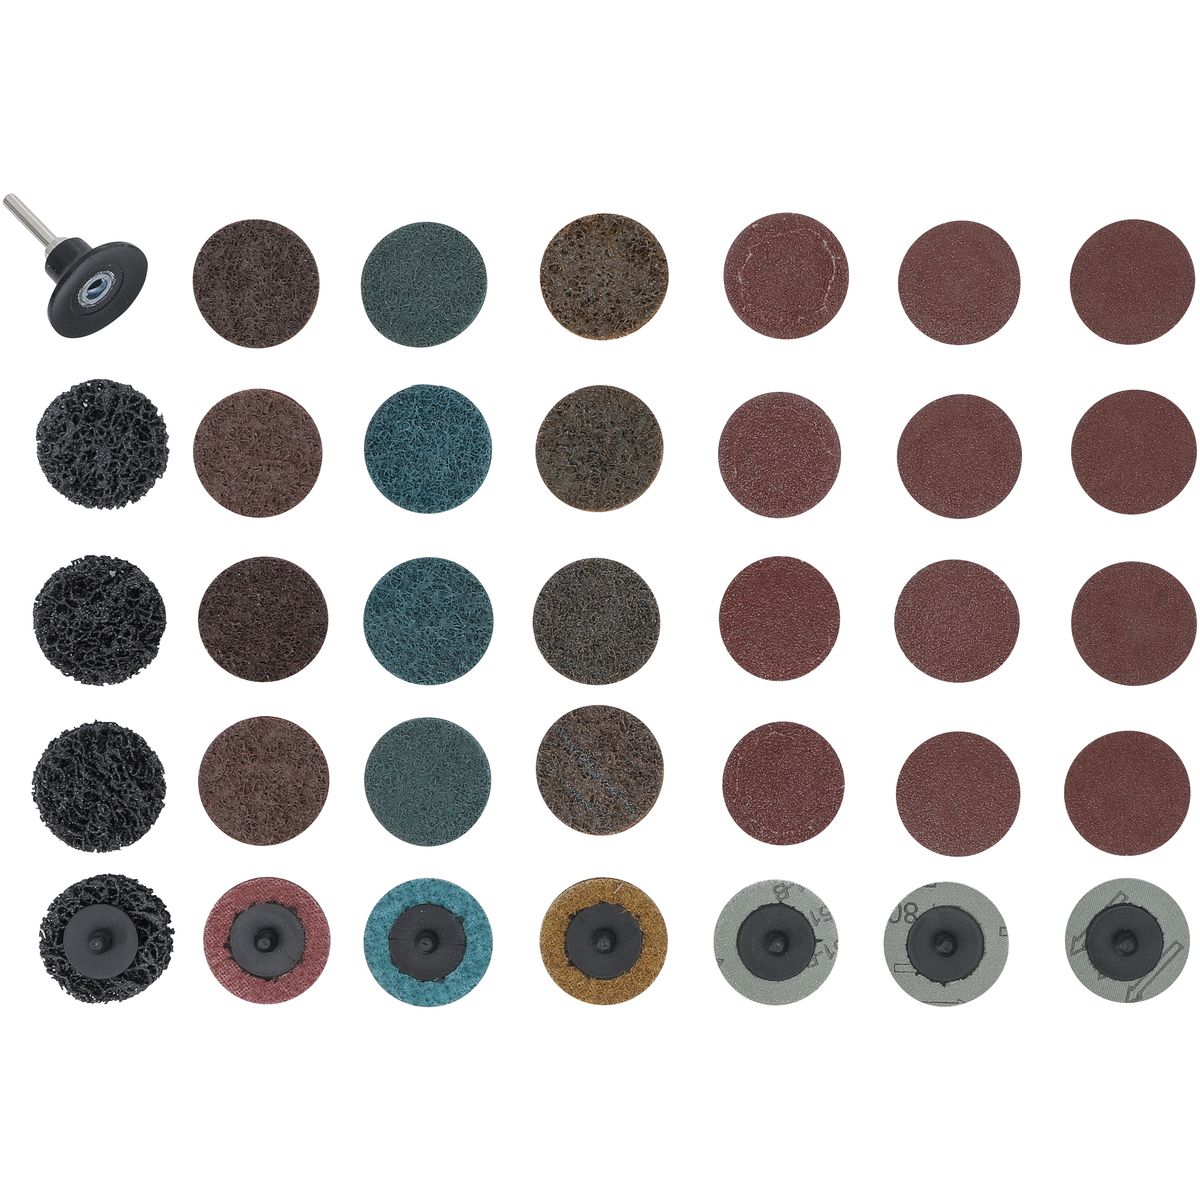 Jeu de disques/plateaux abrasifs | Ø 50 mm | 35 pièces